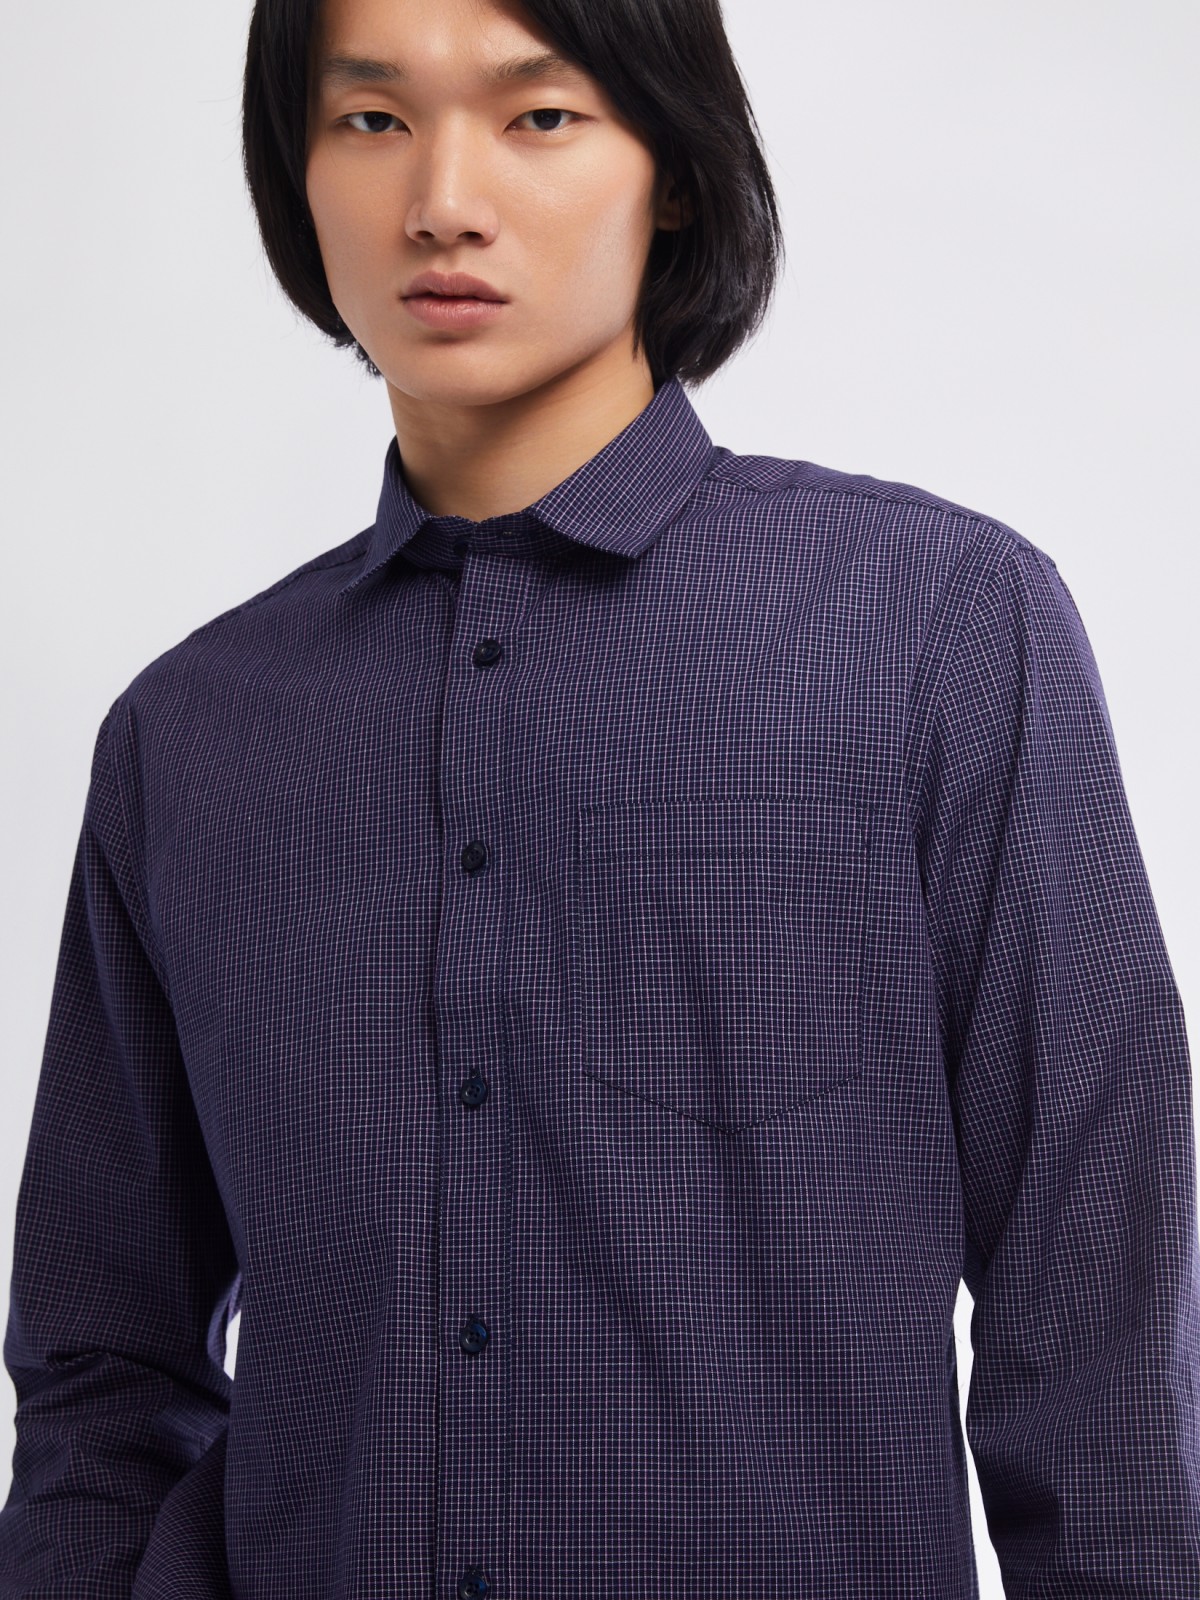 Офисная рубашка прямого силуэта с узором в клетку zolla 01411217Y022, цвет фиолетовый, размер M - фото 5